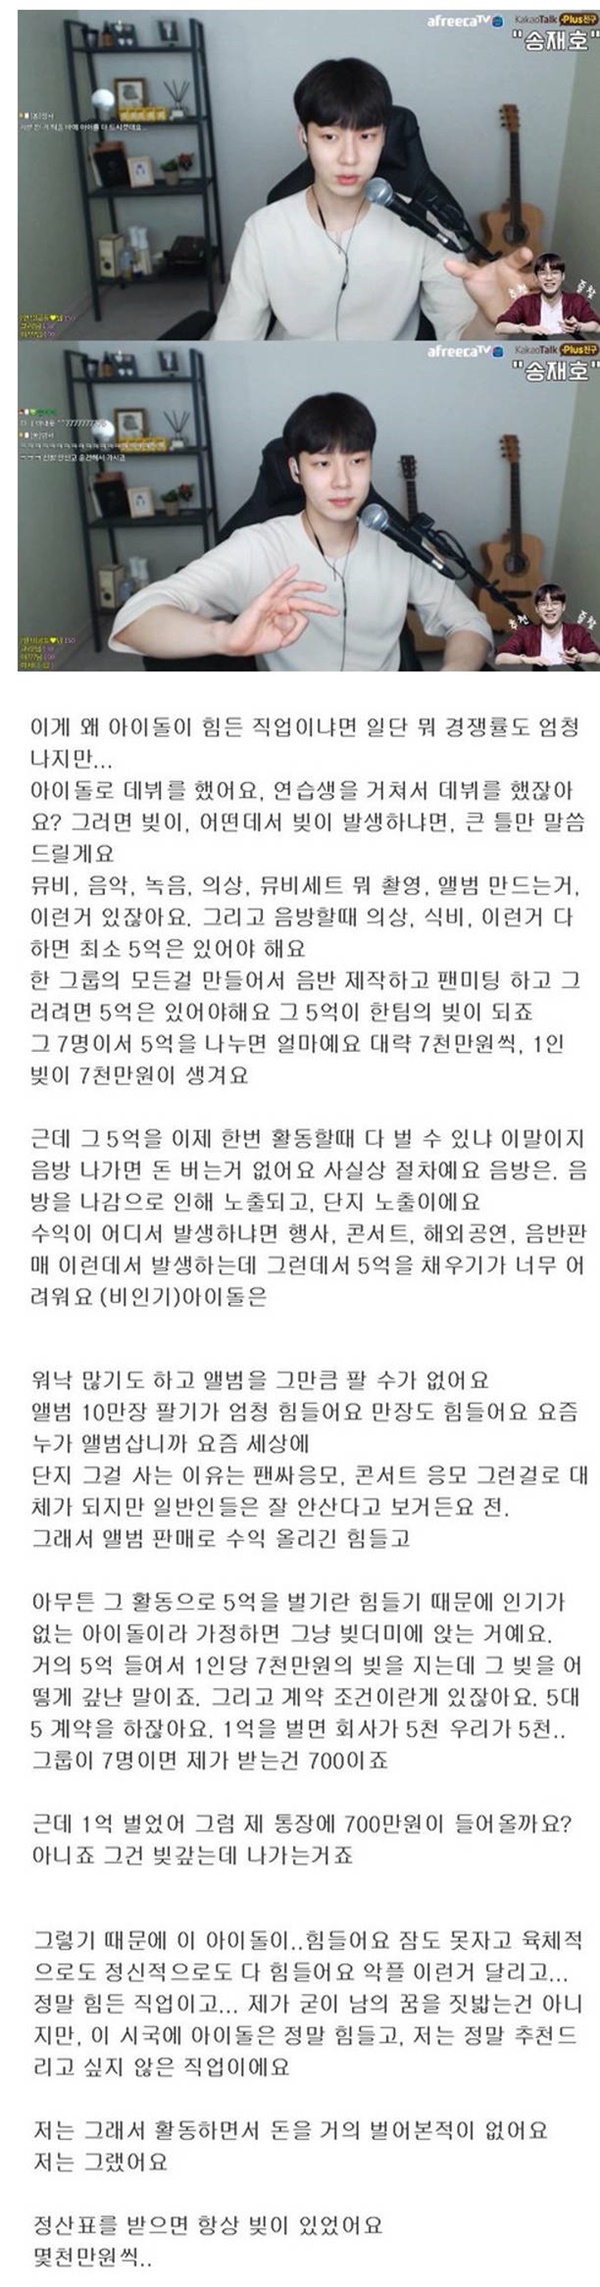 전직 아이돌이 말하는 대한민국 아이돌의 실체